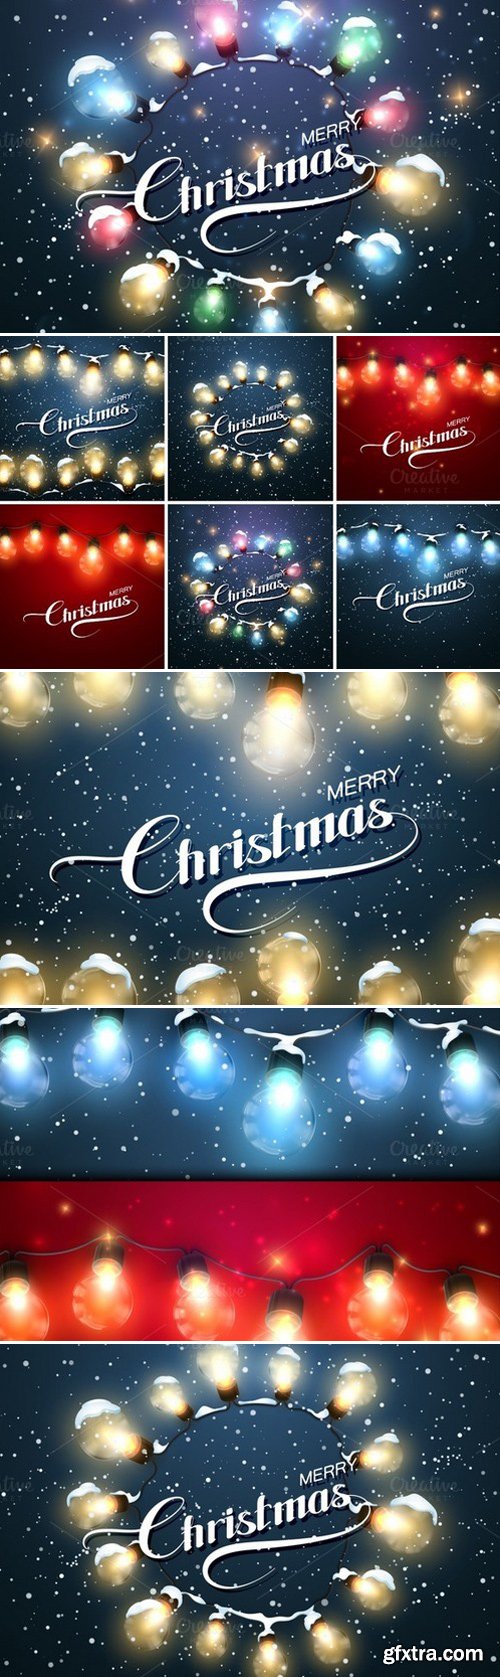 CM - Christmas Lights. Holiday Vector Set 459670